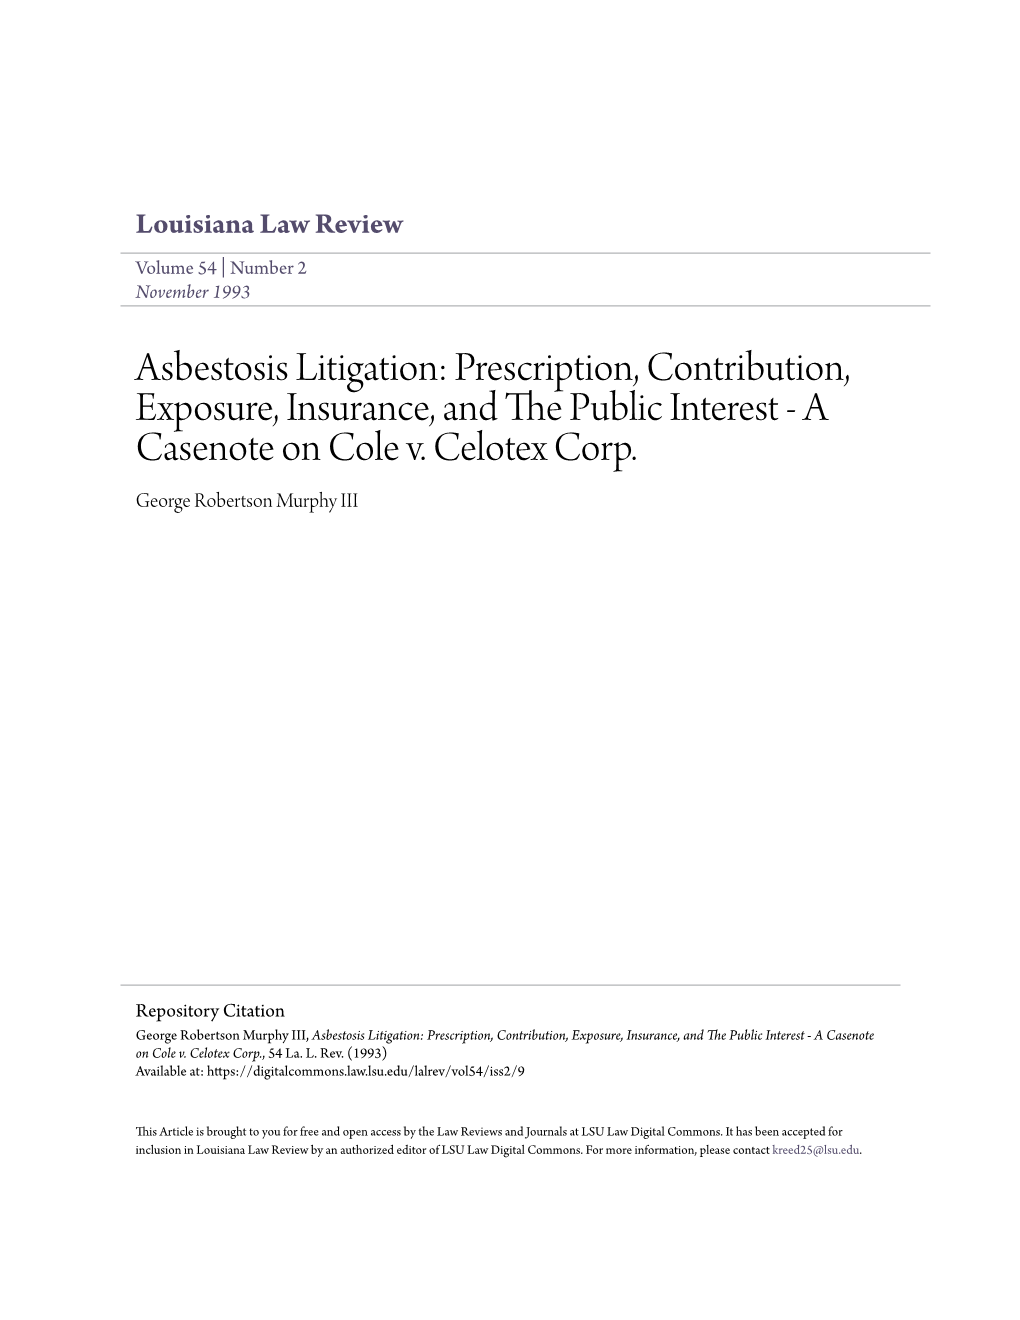 Asbestosis Litigation: Prescription, Contribution, Exposure, Insurance, and the Public Ni Terest - a Casenote on Cole V